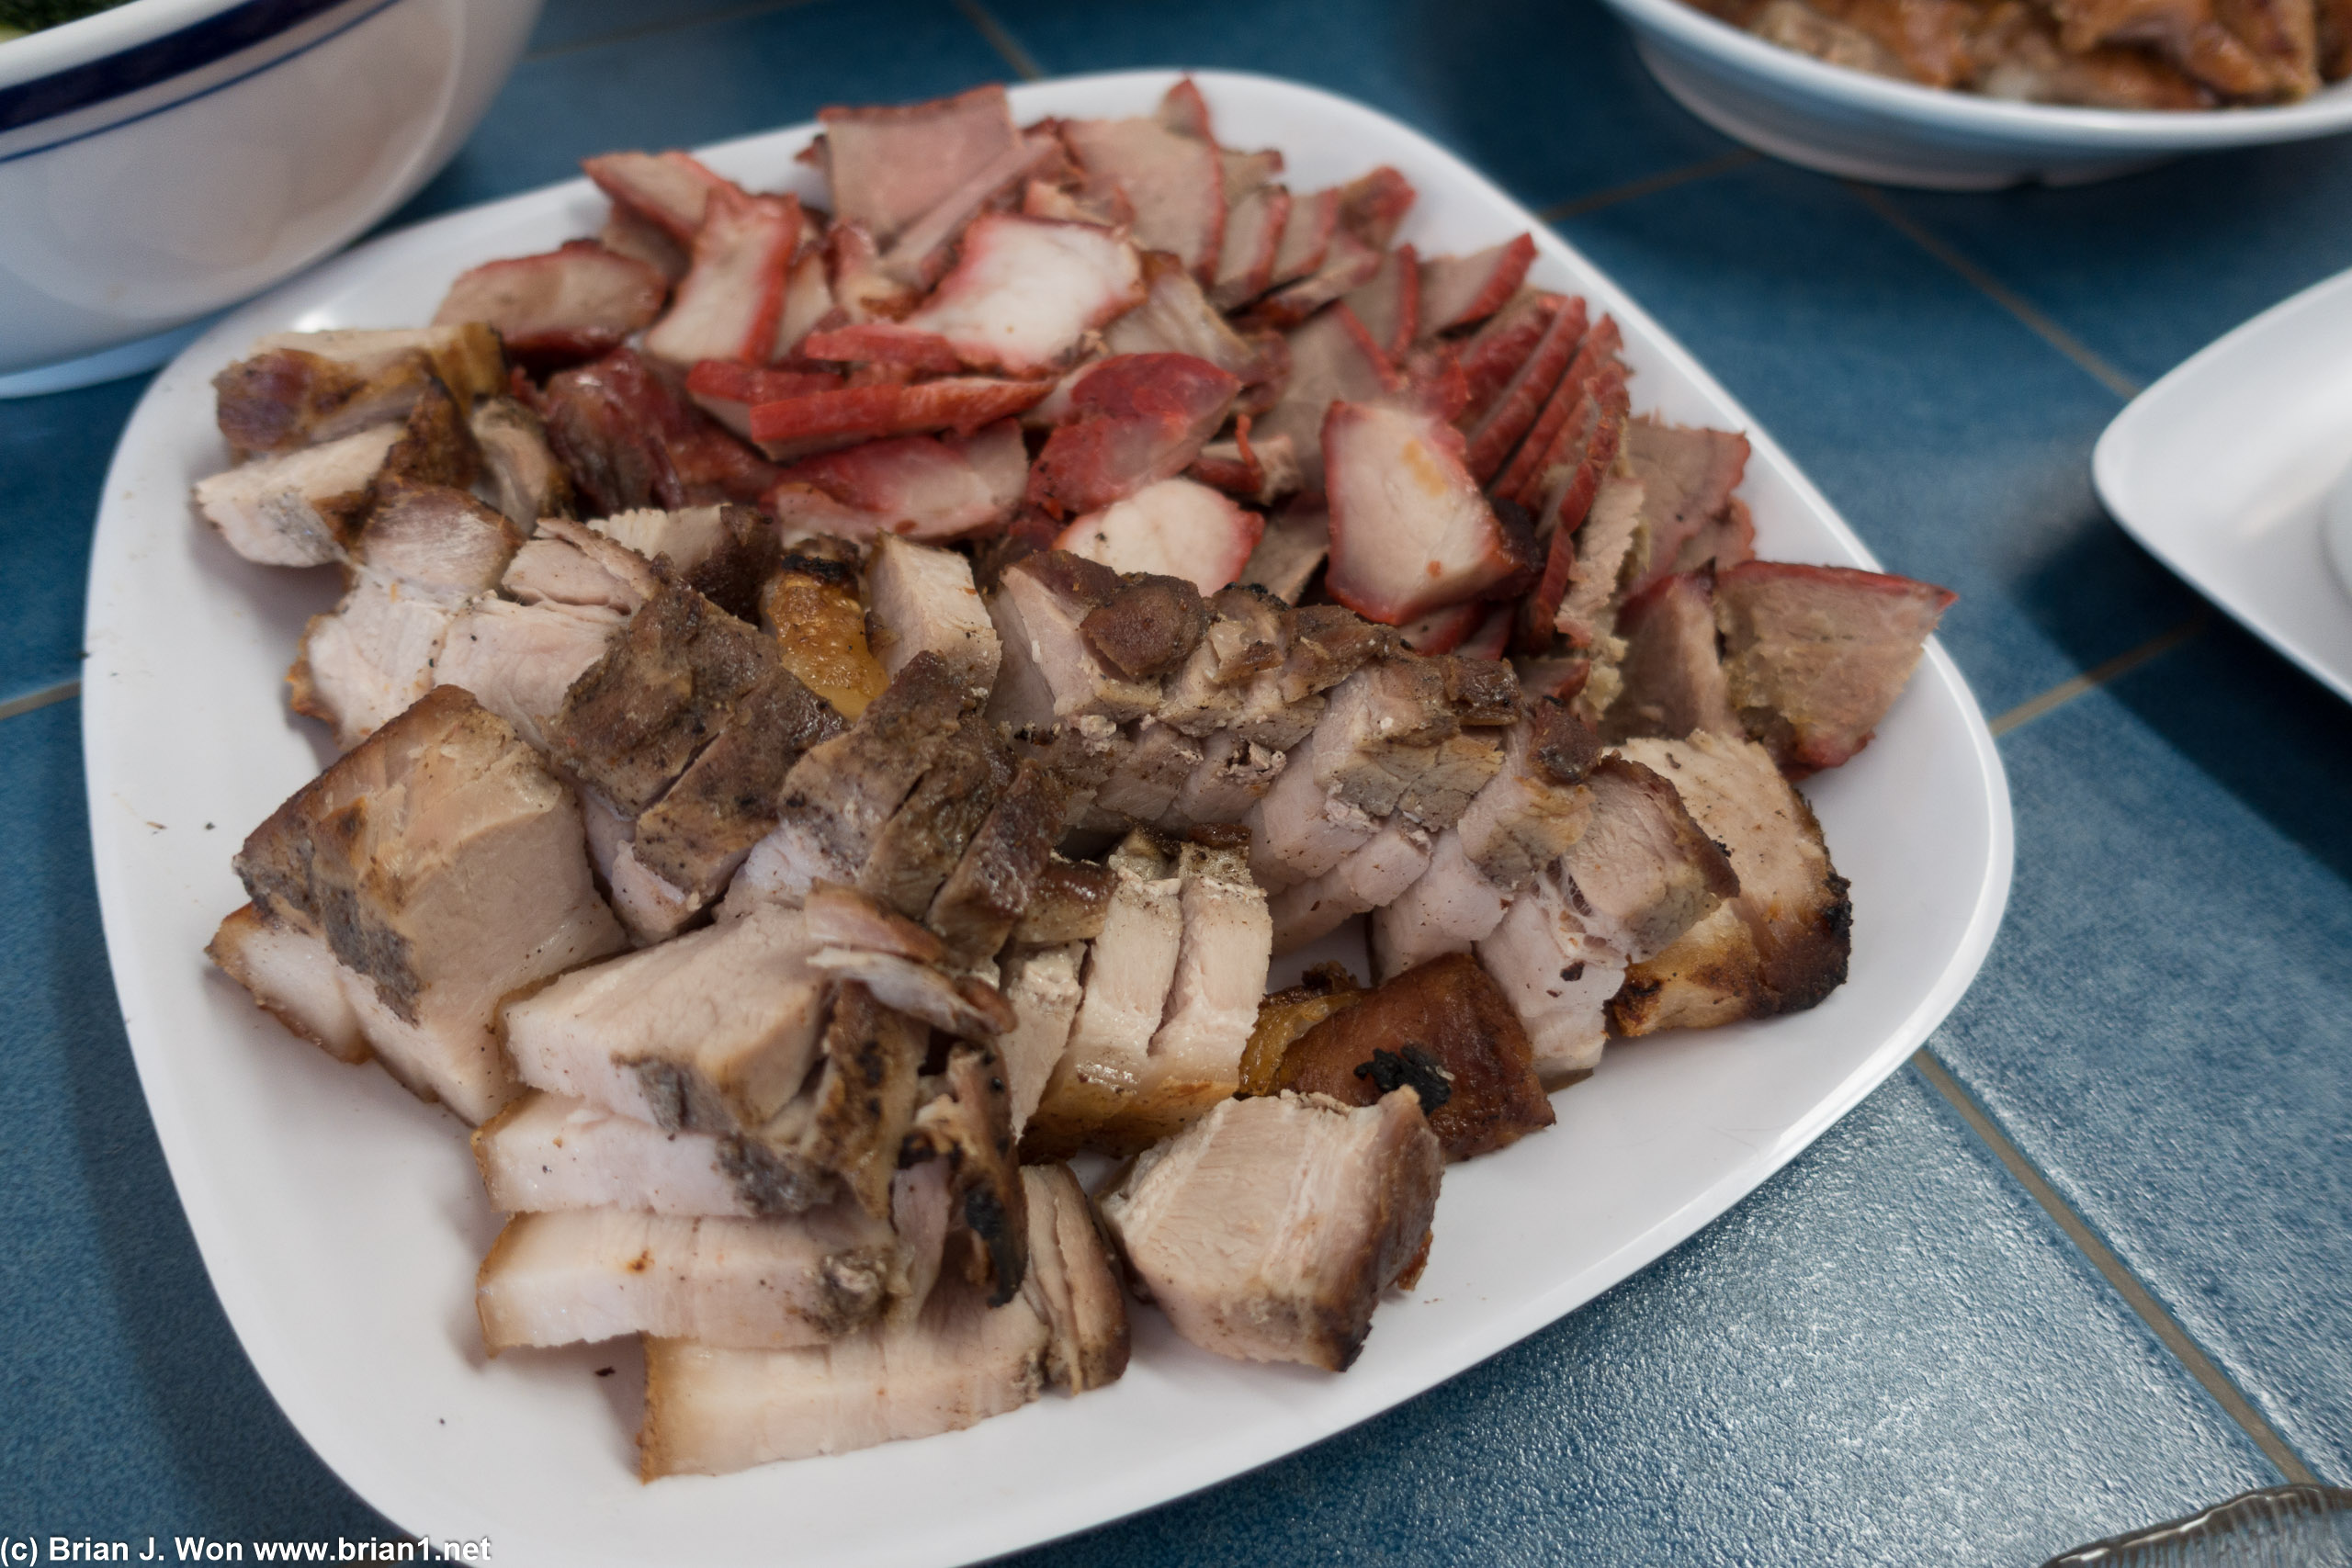 Char shu and roast pork.